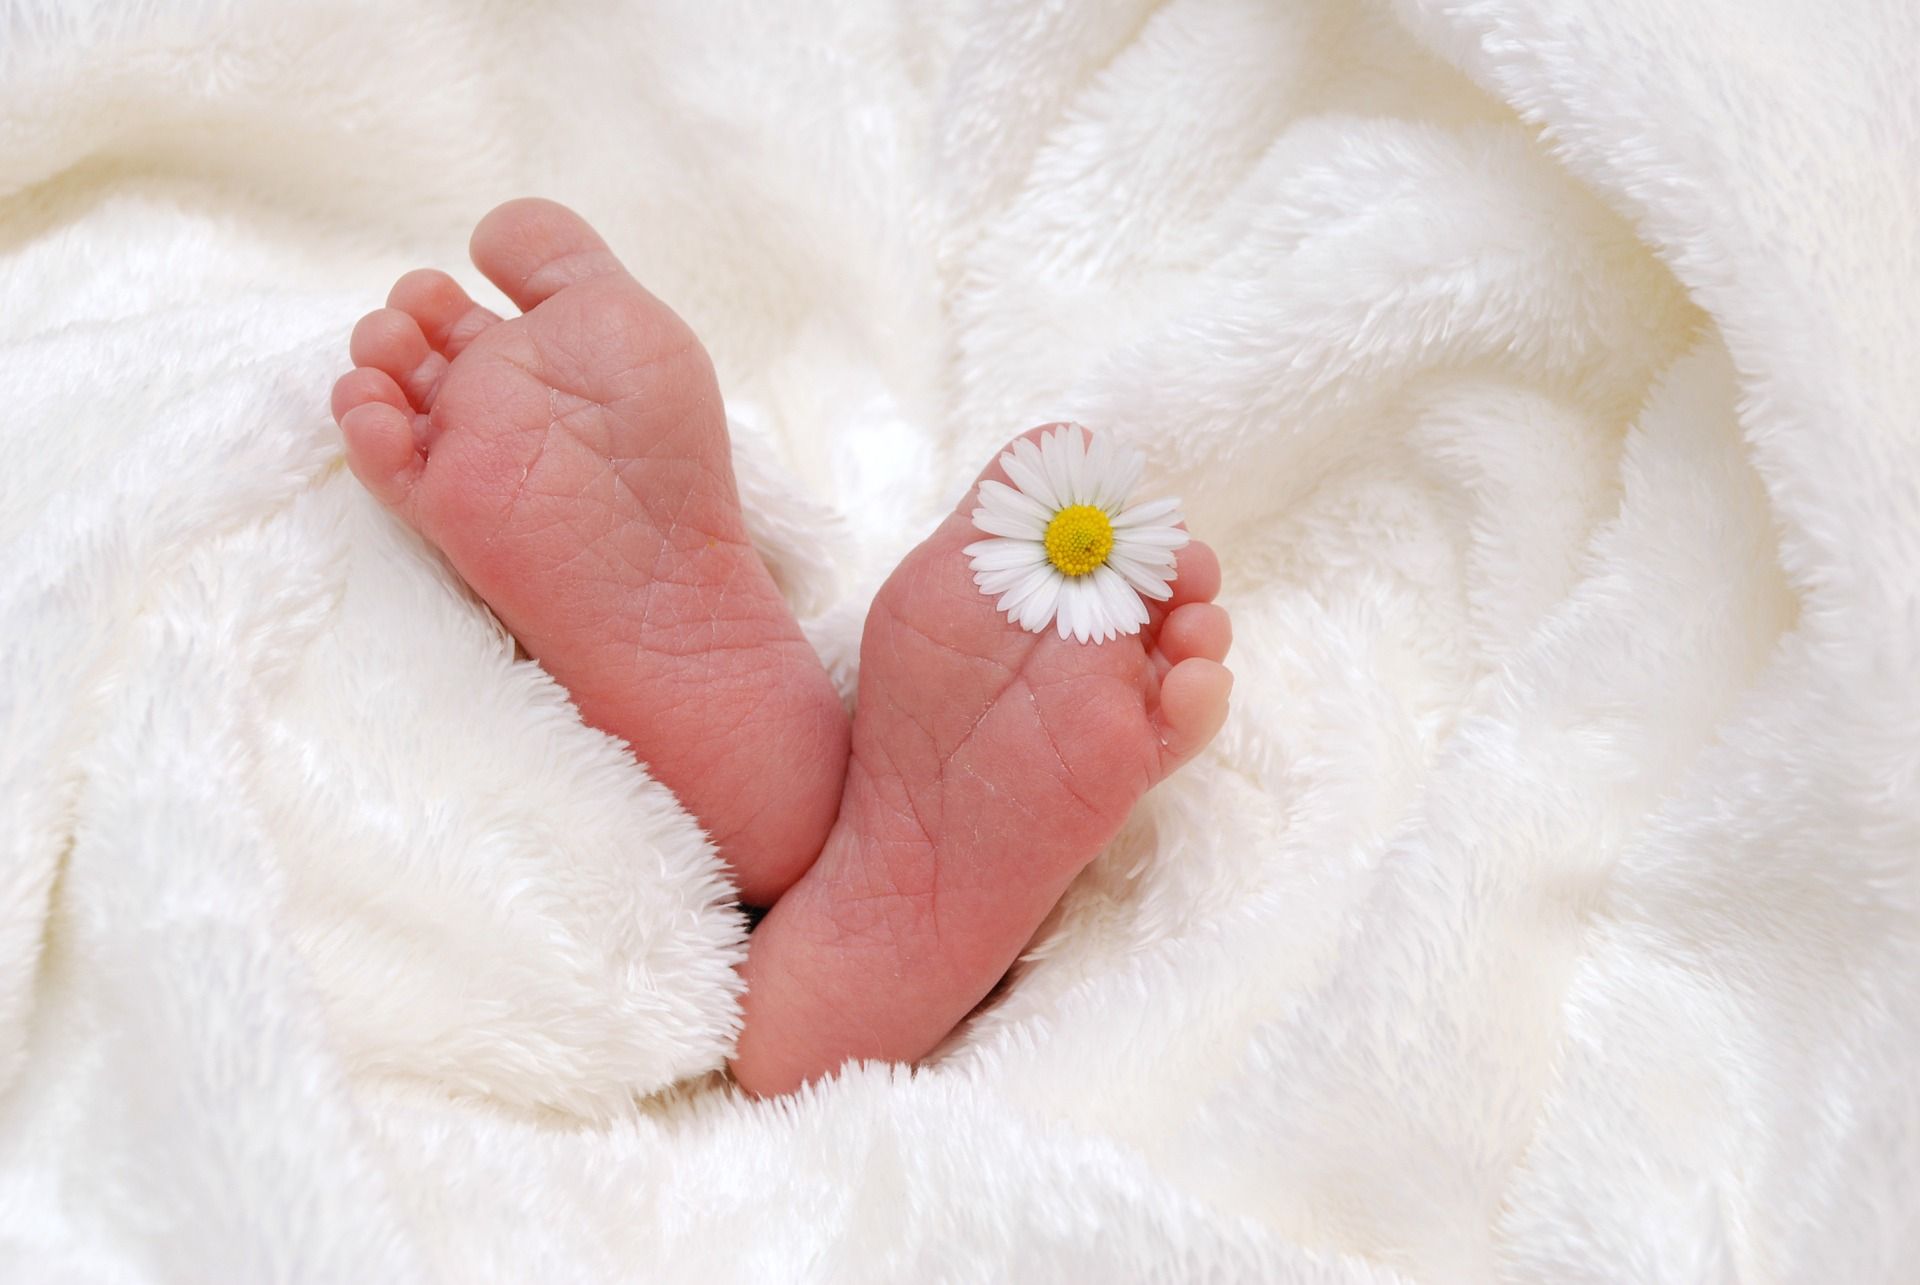 Los pies de un bebé con una flor entre los dedos